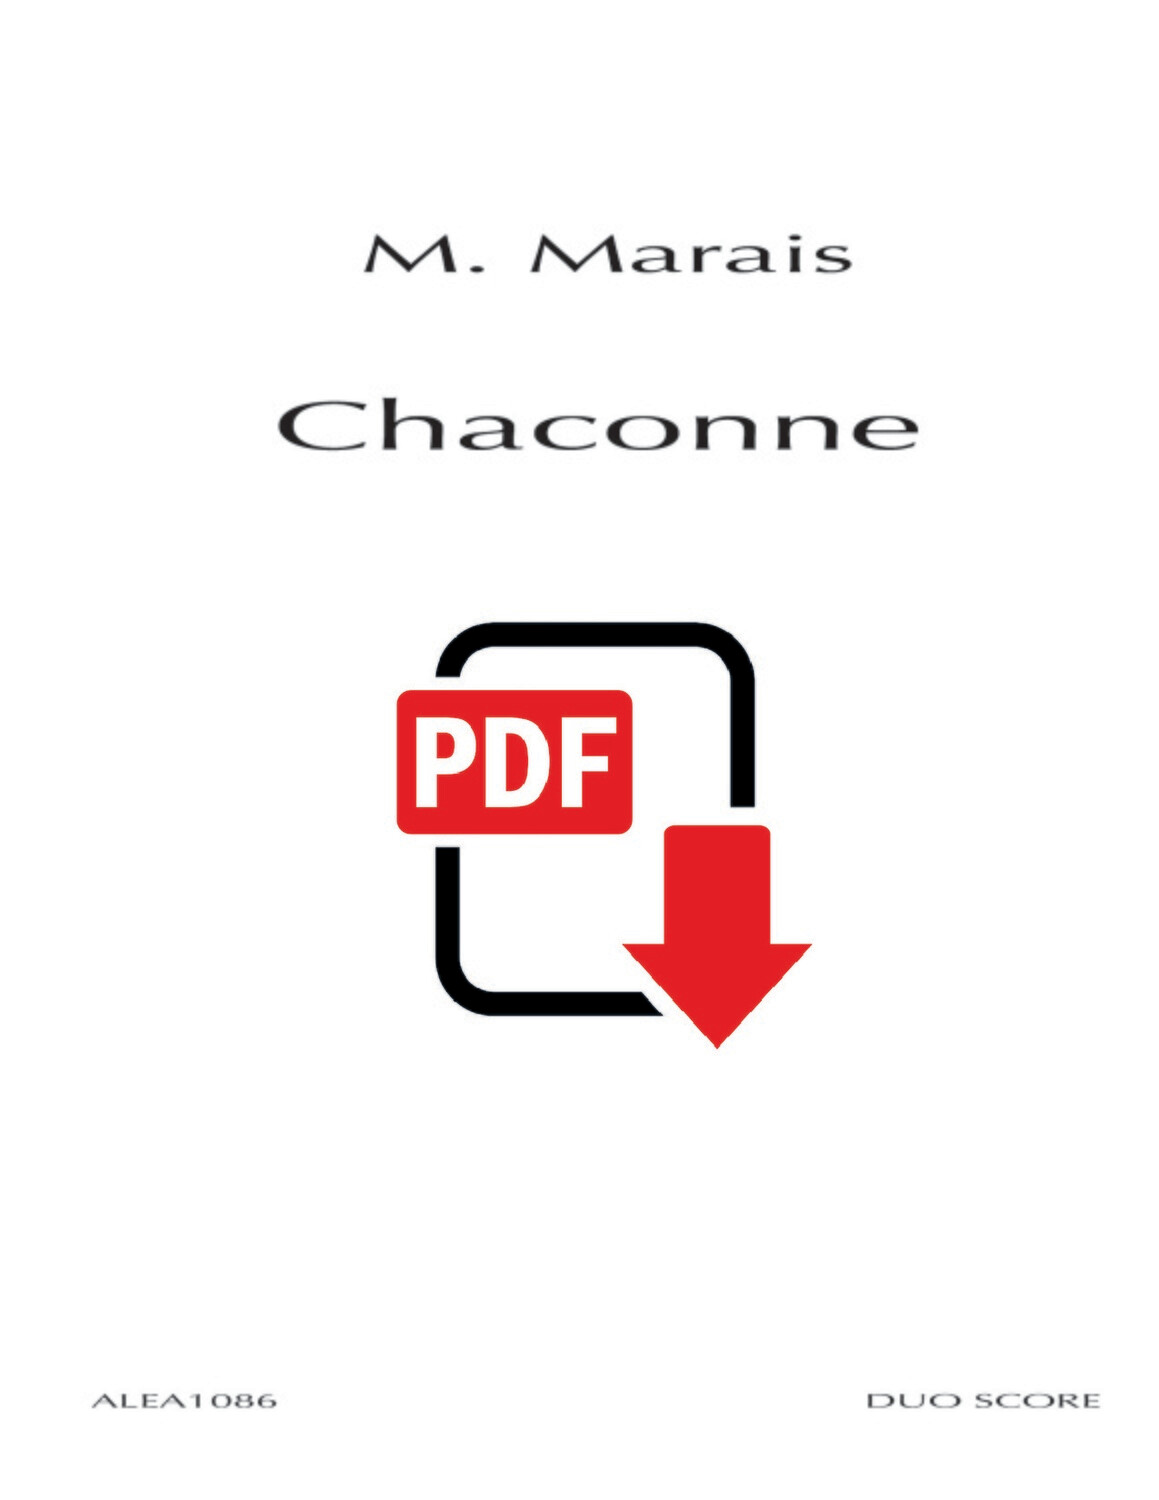 Marais: Chaconne (PDF)